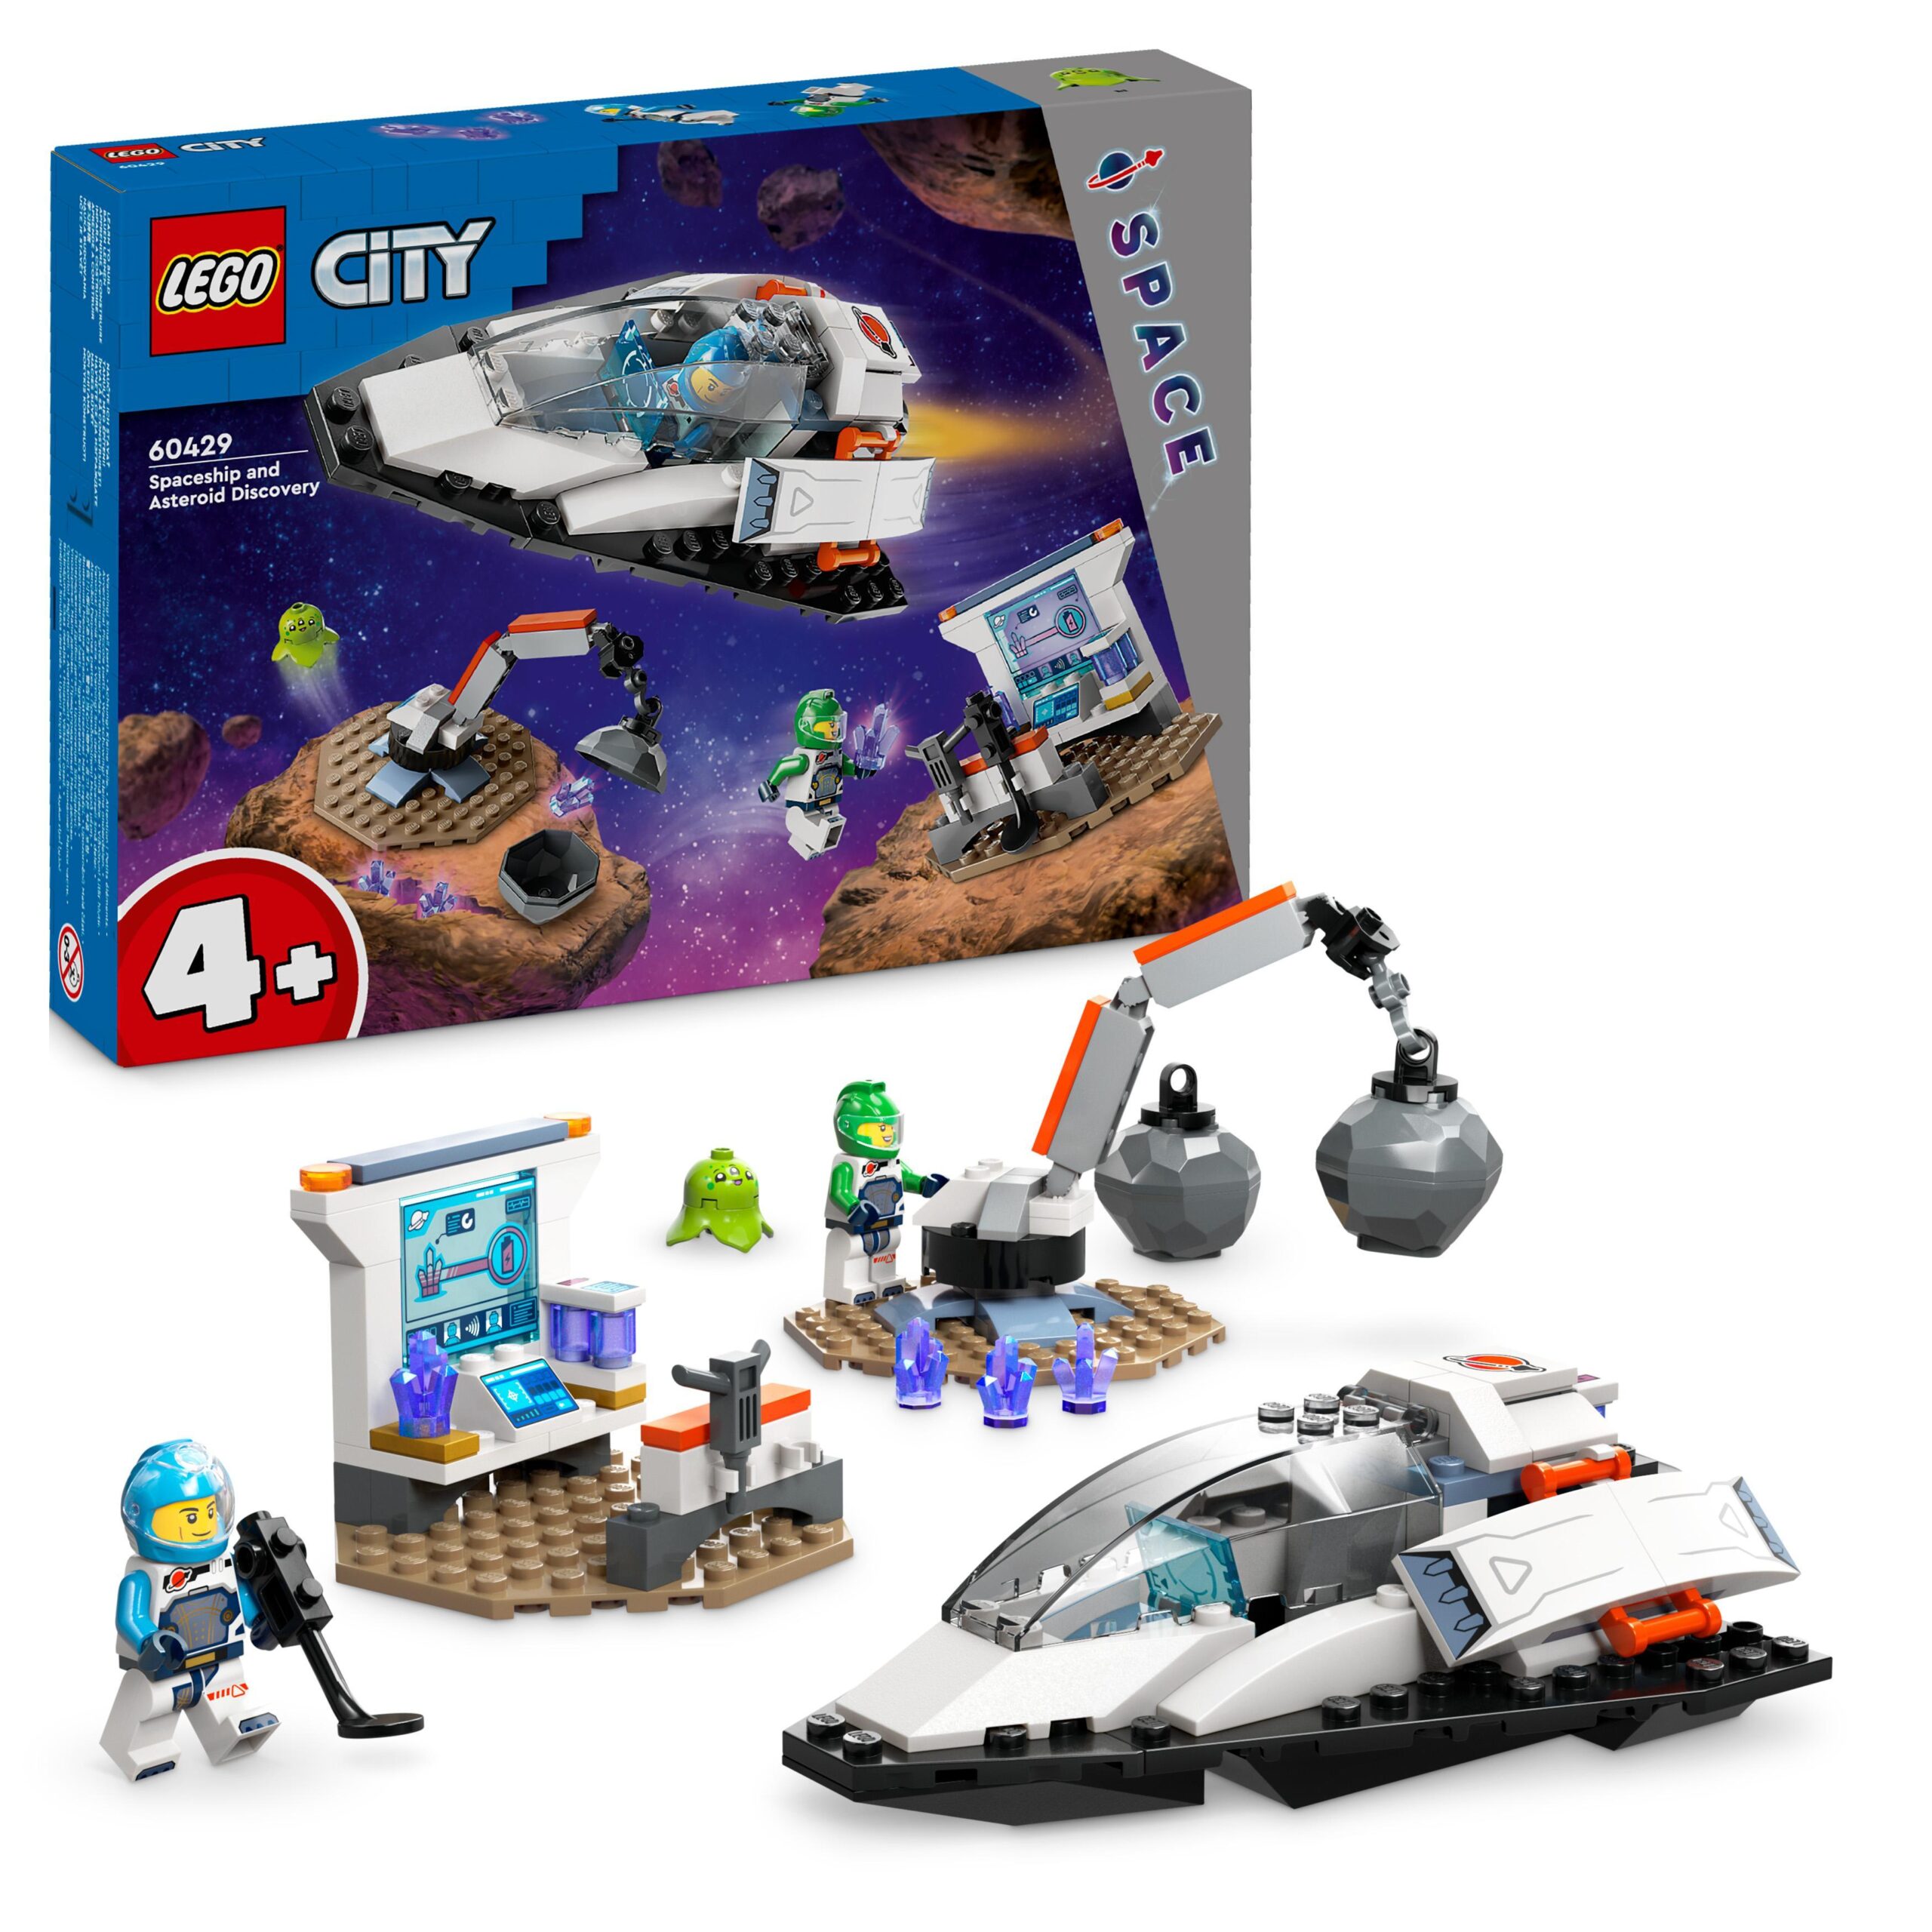 Lego city 60429 navetta spaziale e scoperta di asteroidi, gioco per bambini 4+ con astronave giocattolo, gru e 2 minifigure